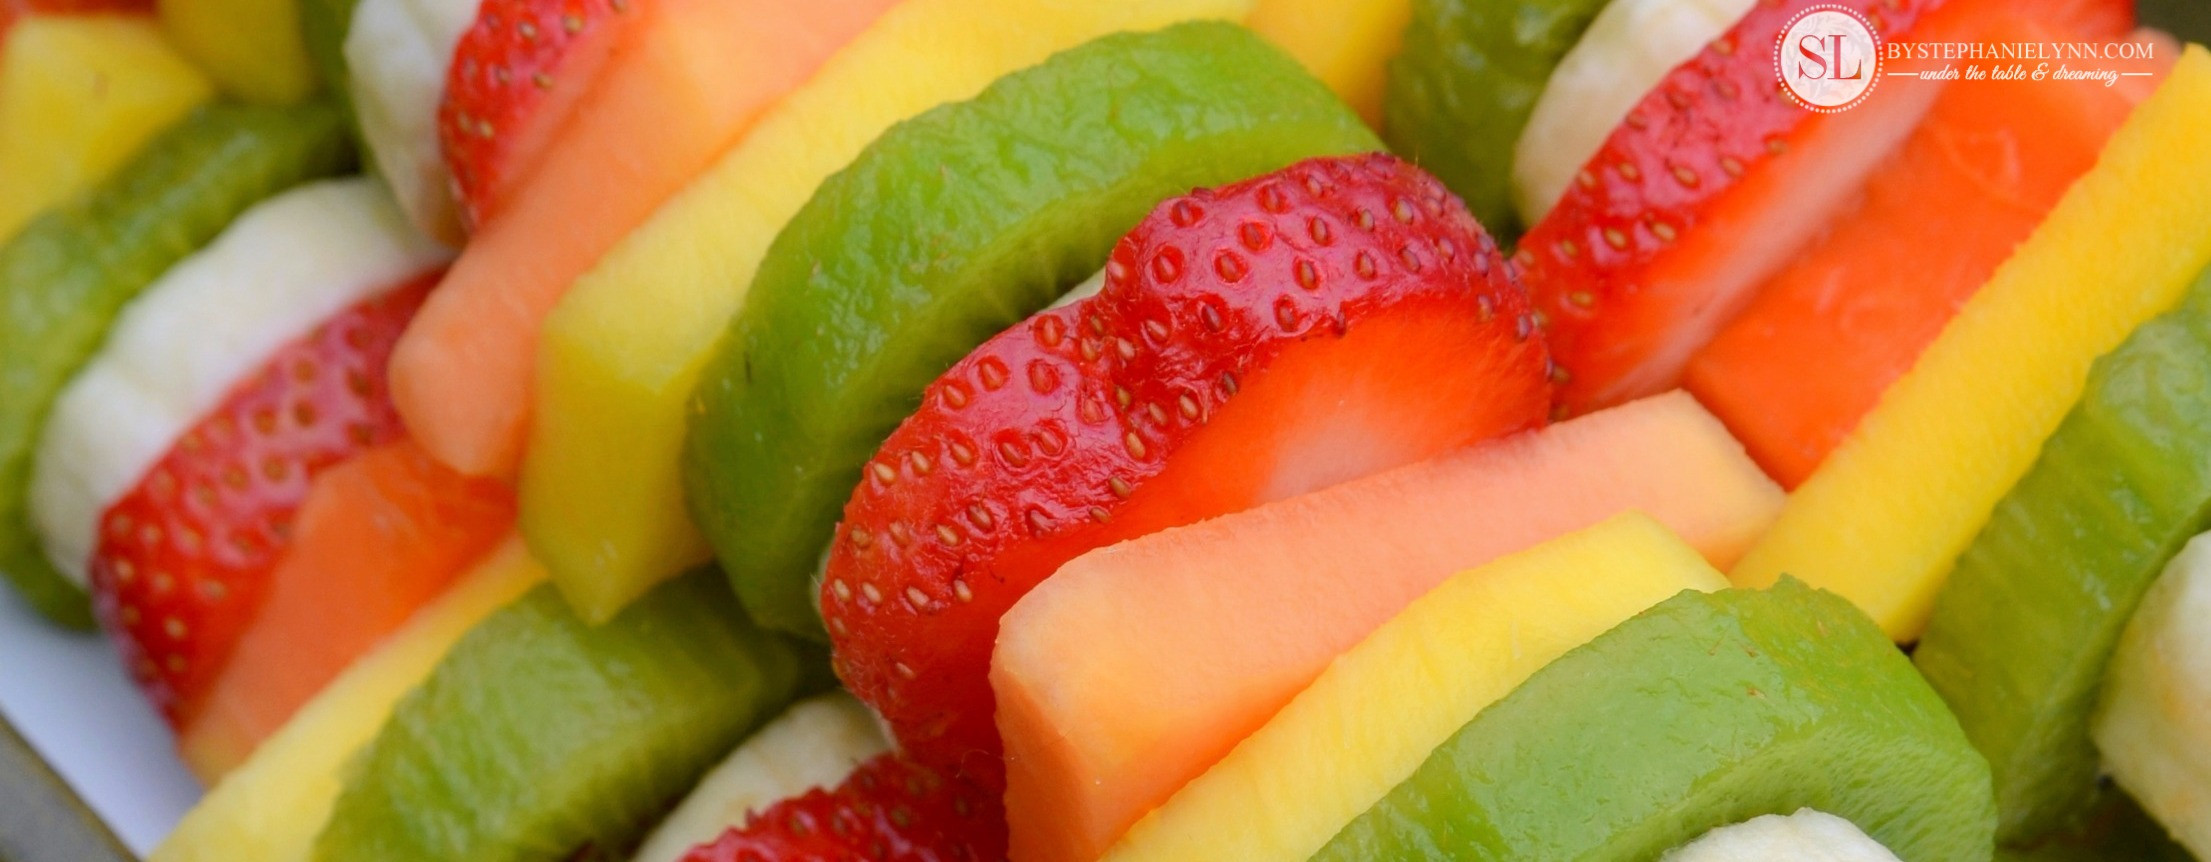 Best Tasting Healthy Snacks
 Healthy Summer Snacks with Taste of Nature